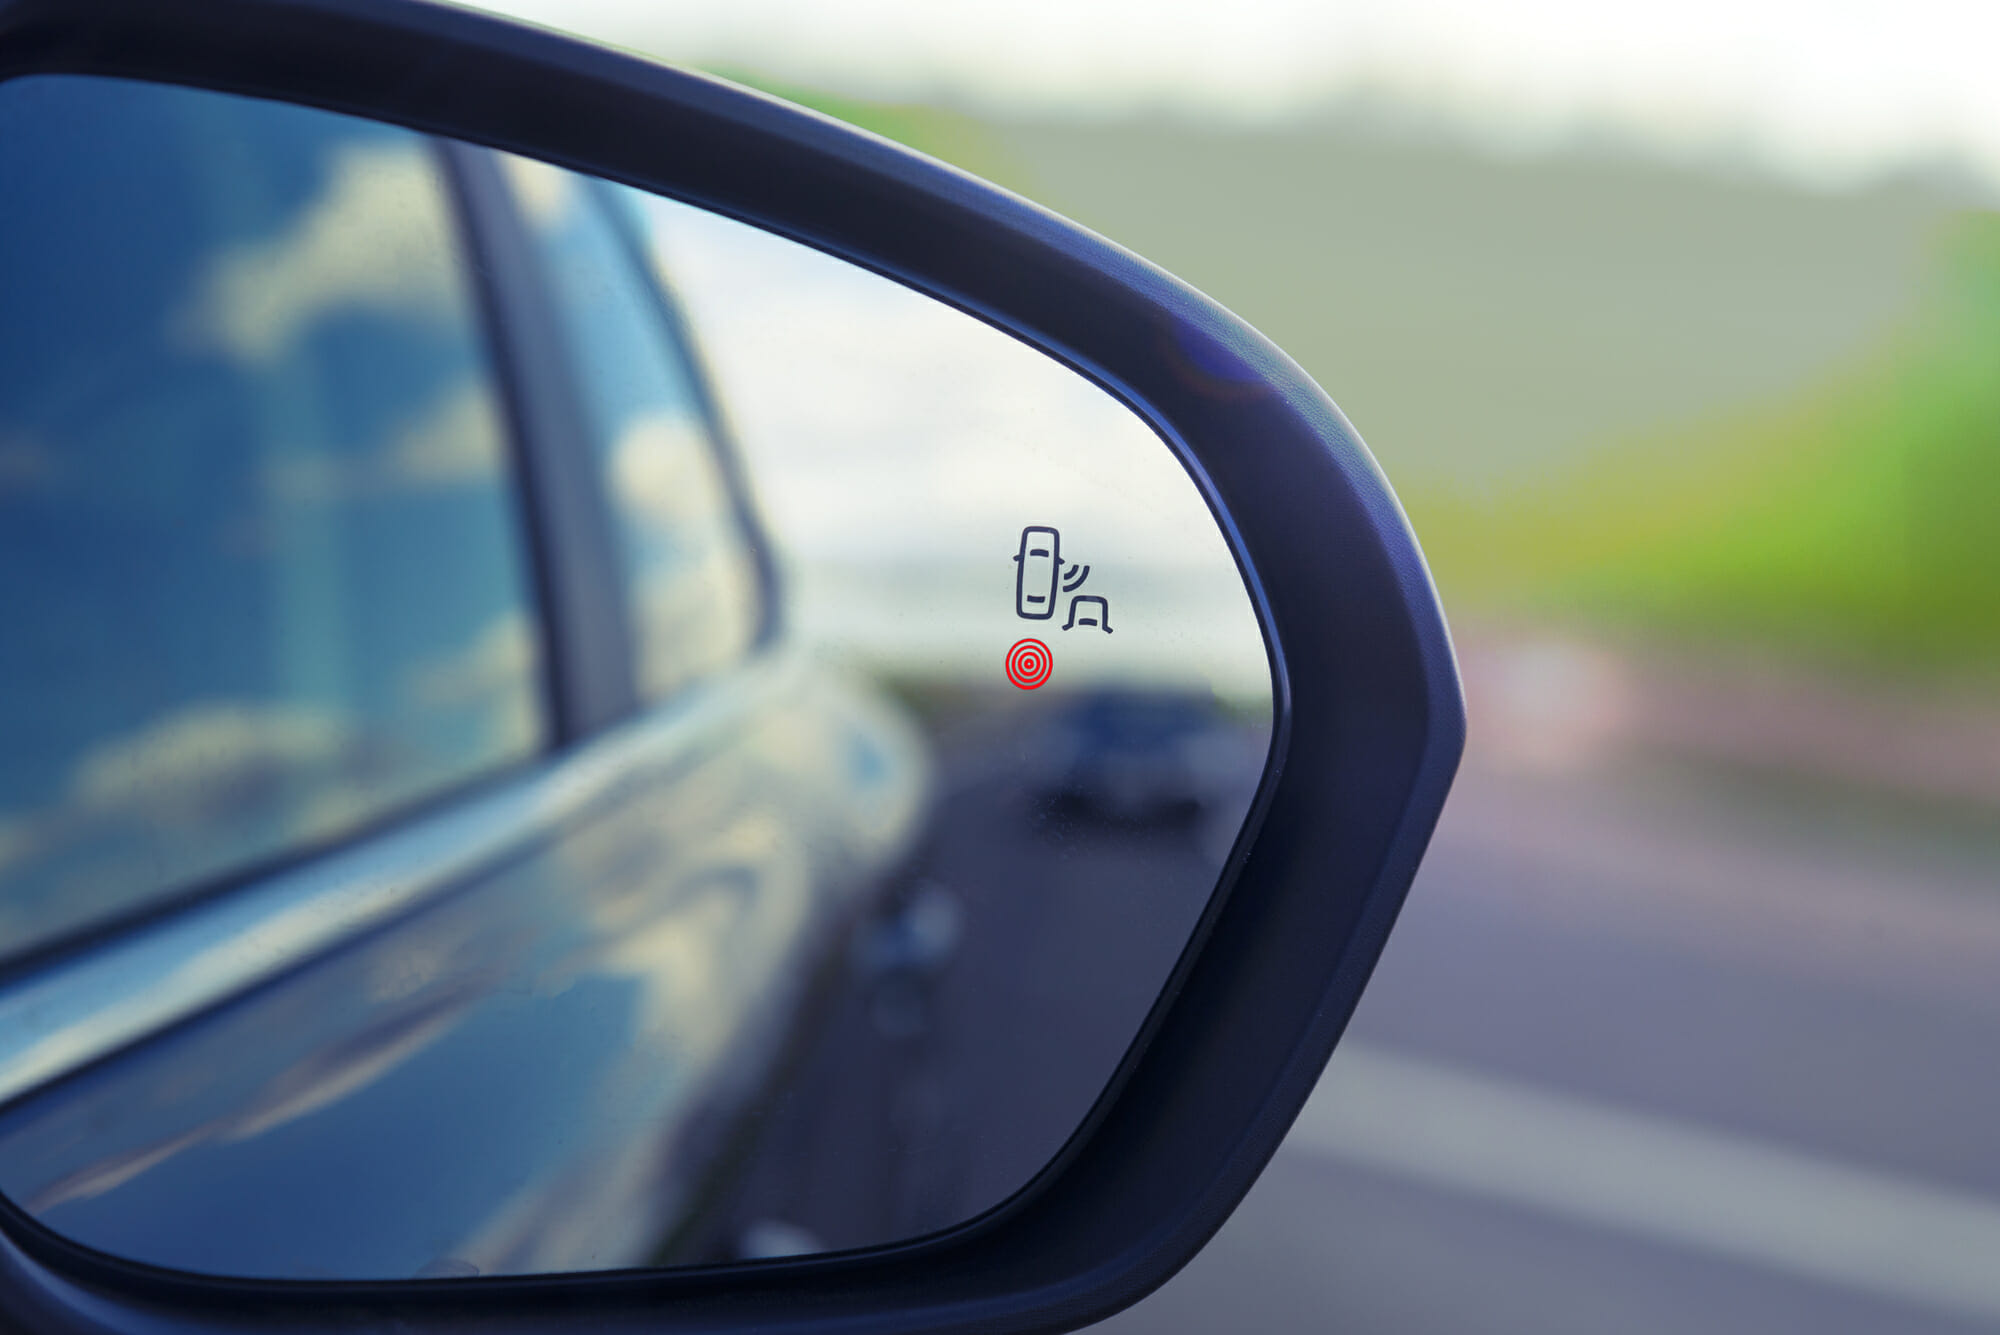 Car Blind Spot Monitoring System Warning Light